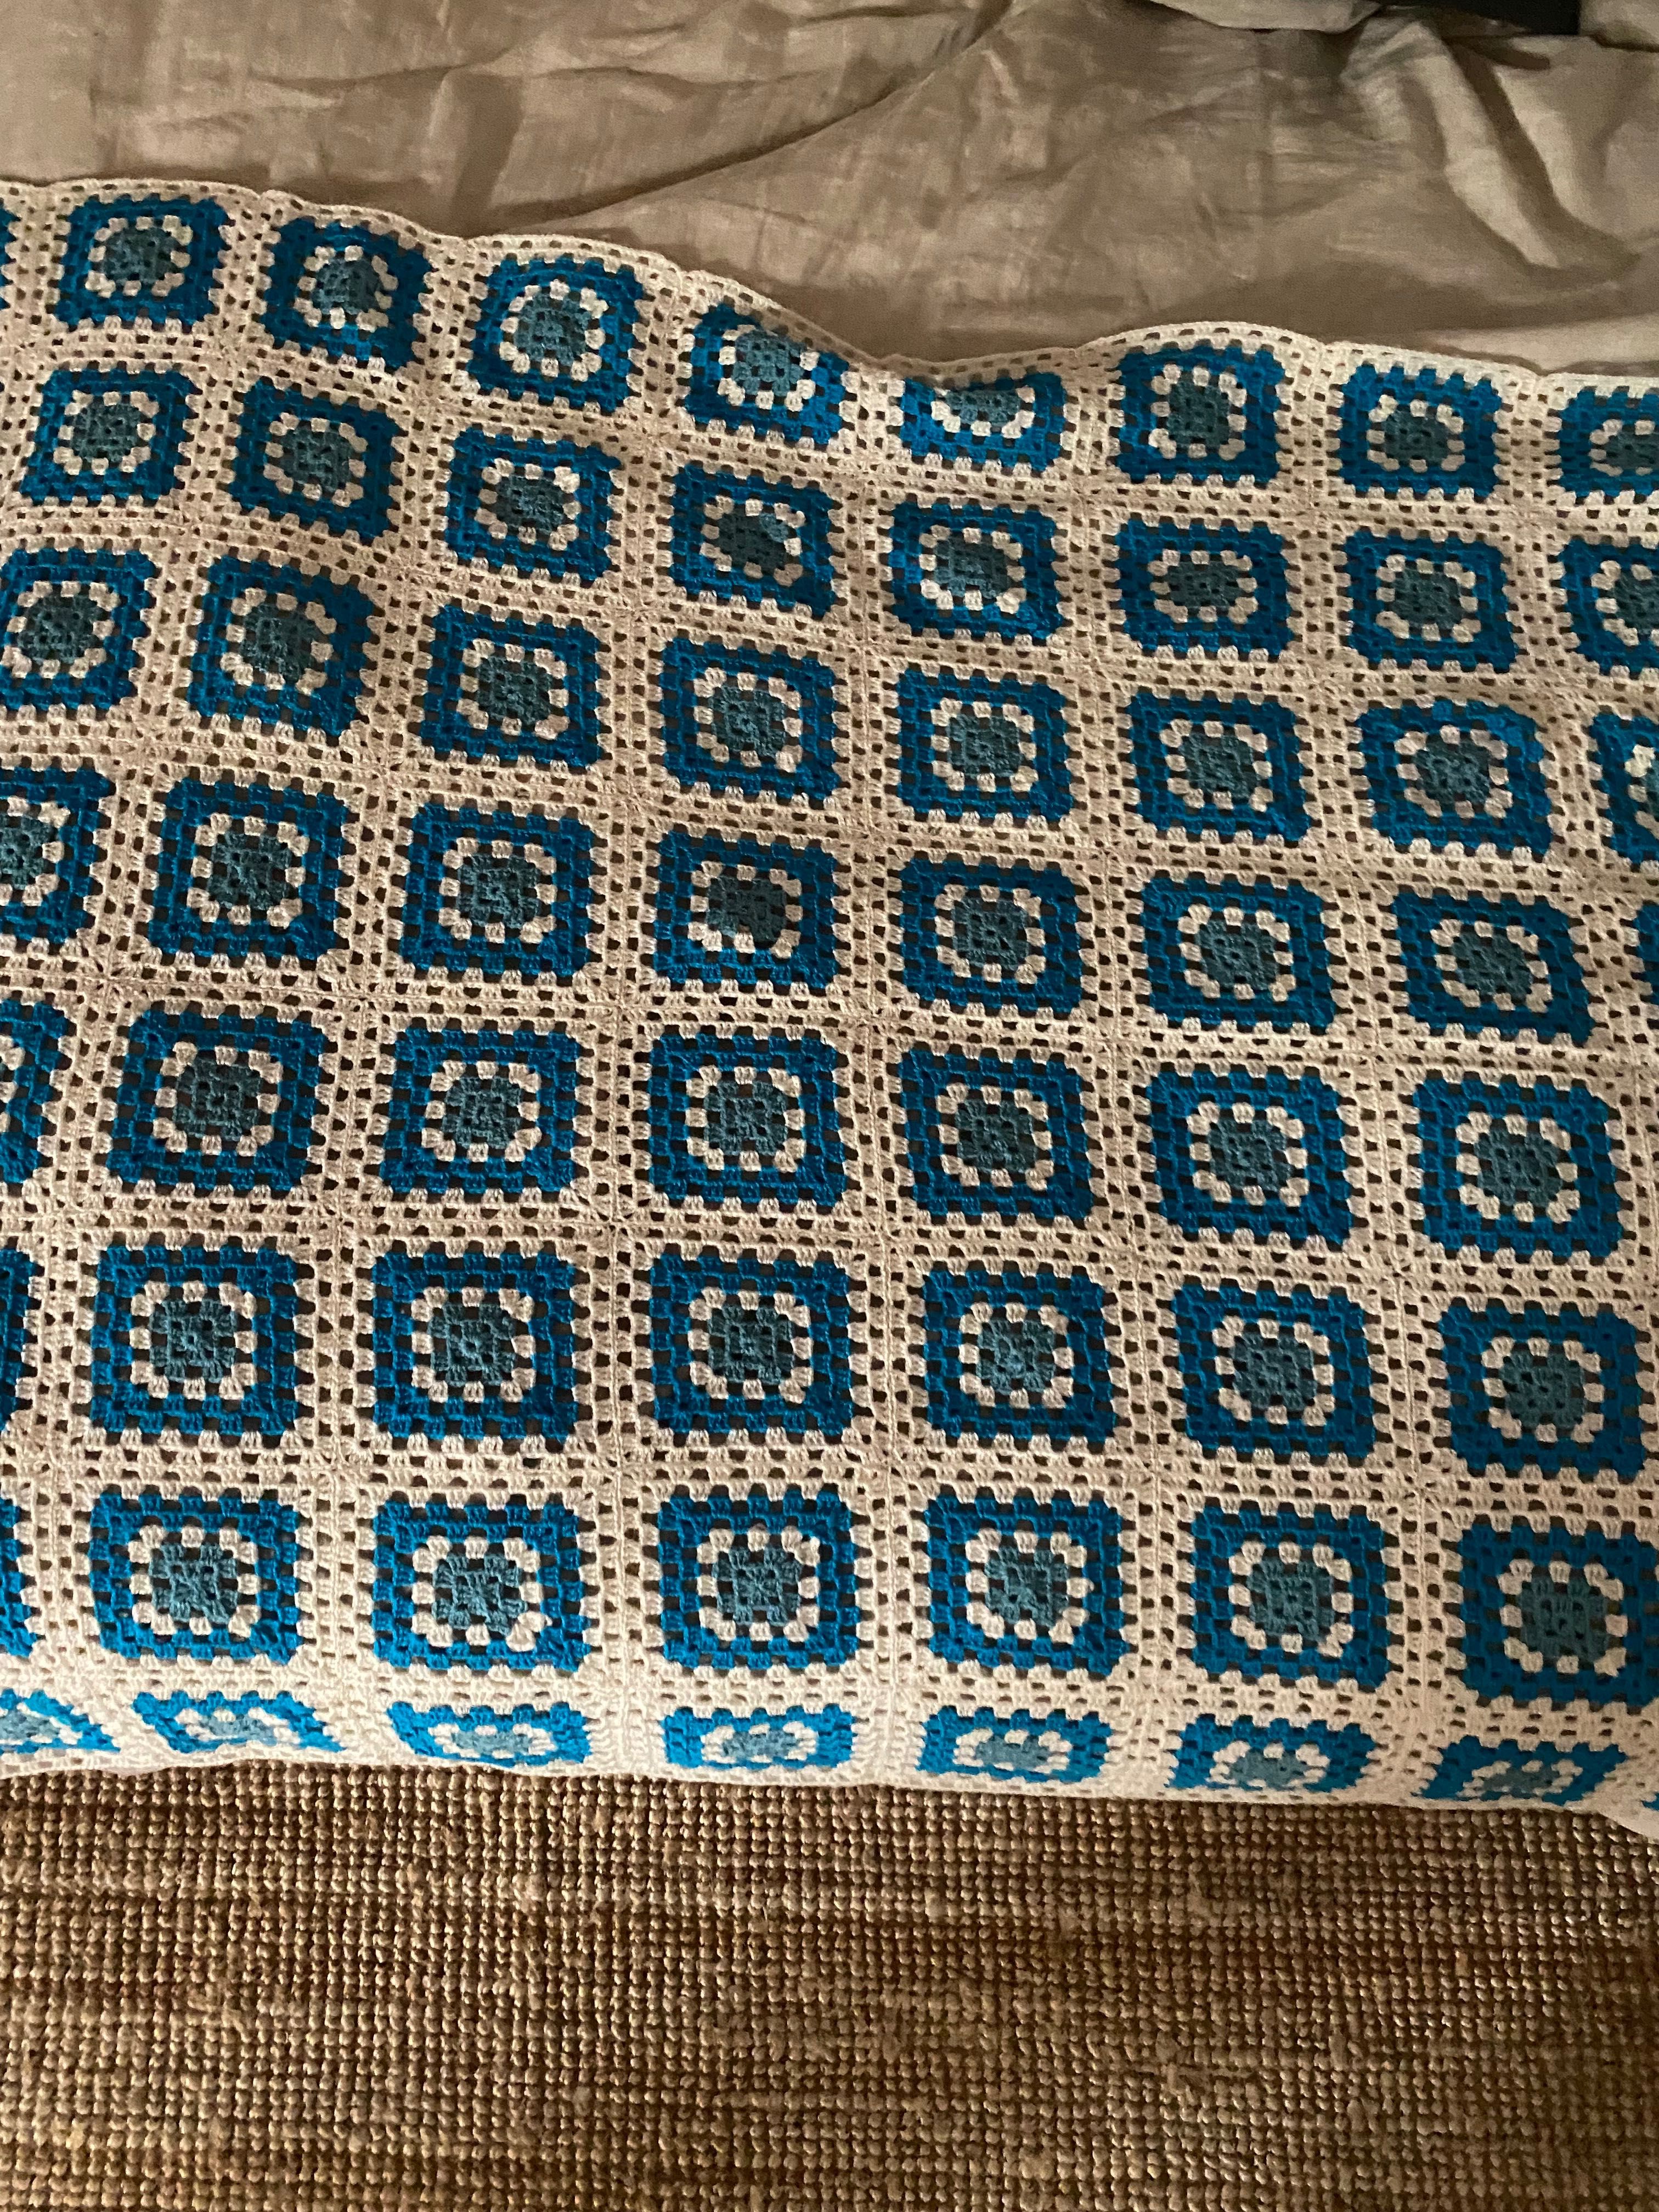 Manta / Colcha em Crochet feita à Mão (Made in Portugal)